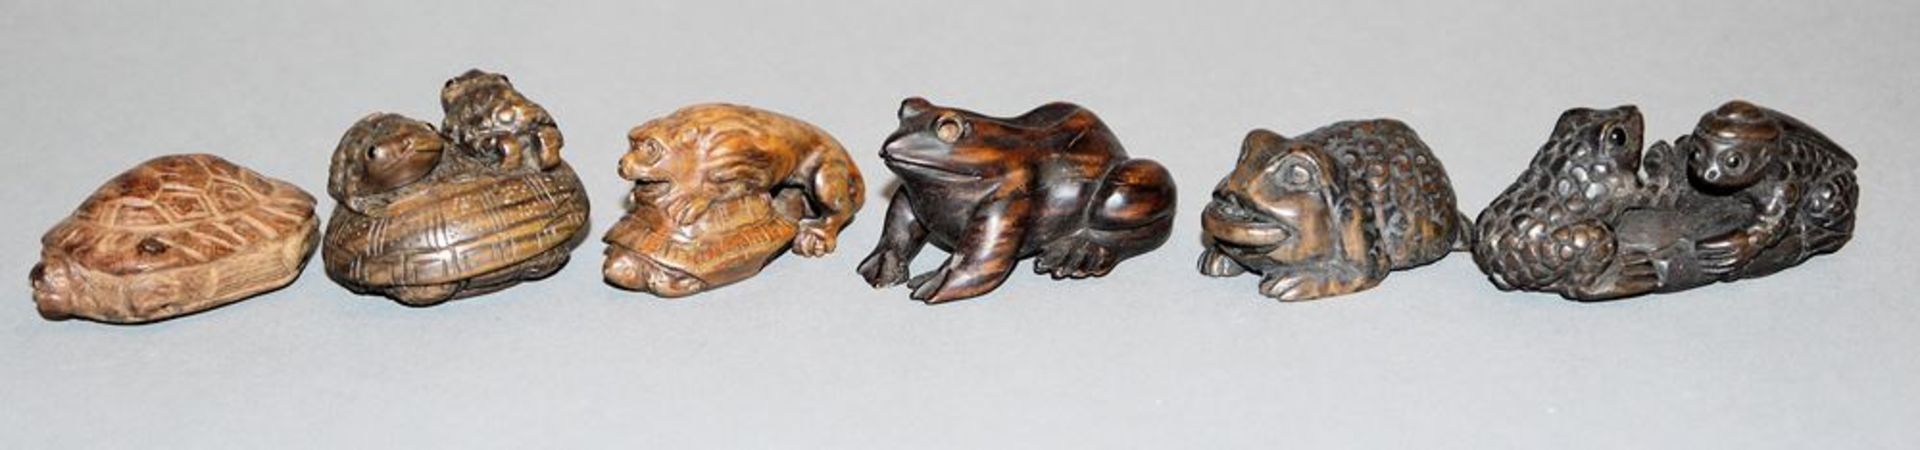 Kröten und Schildkröten, sechs japanische Netsuke aus Edelholz